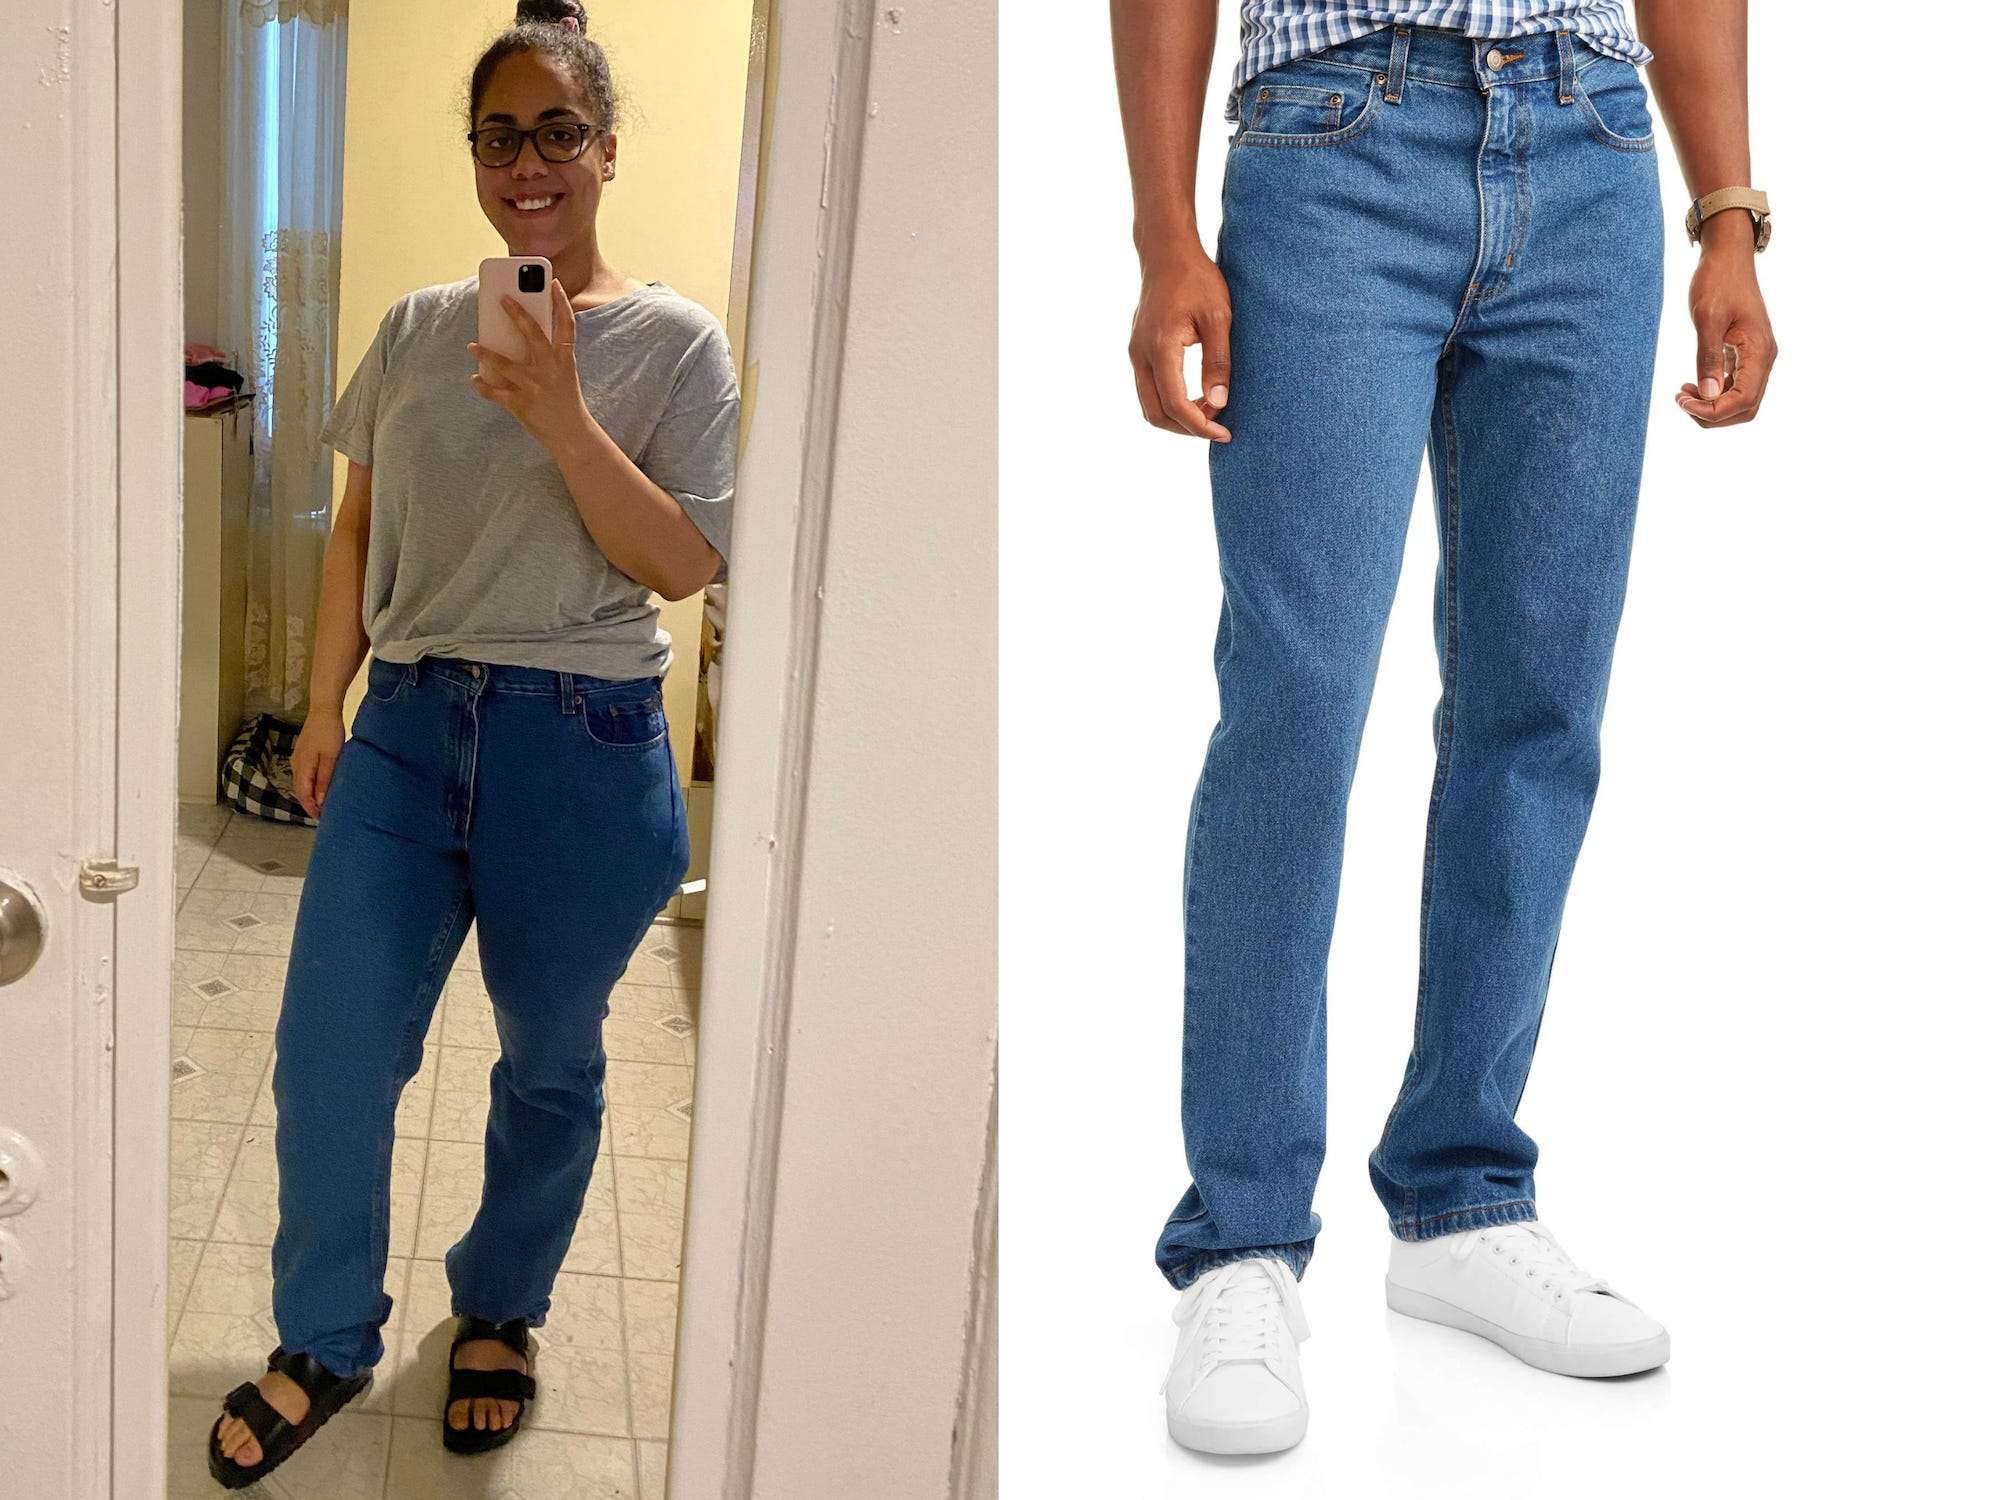 my fit jeans walmart